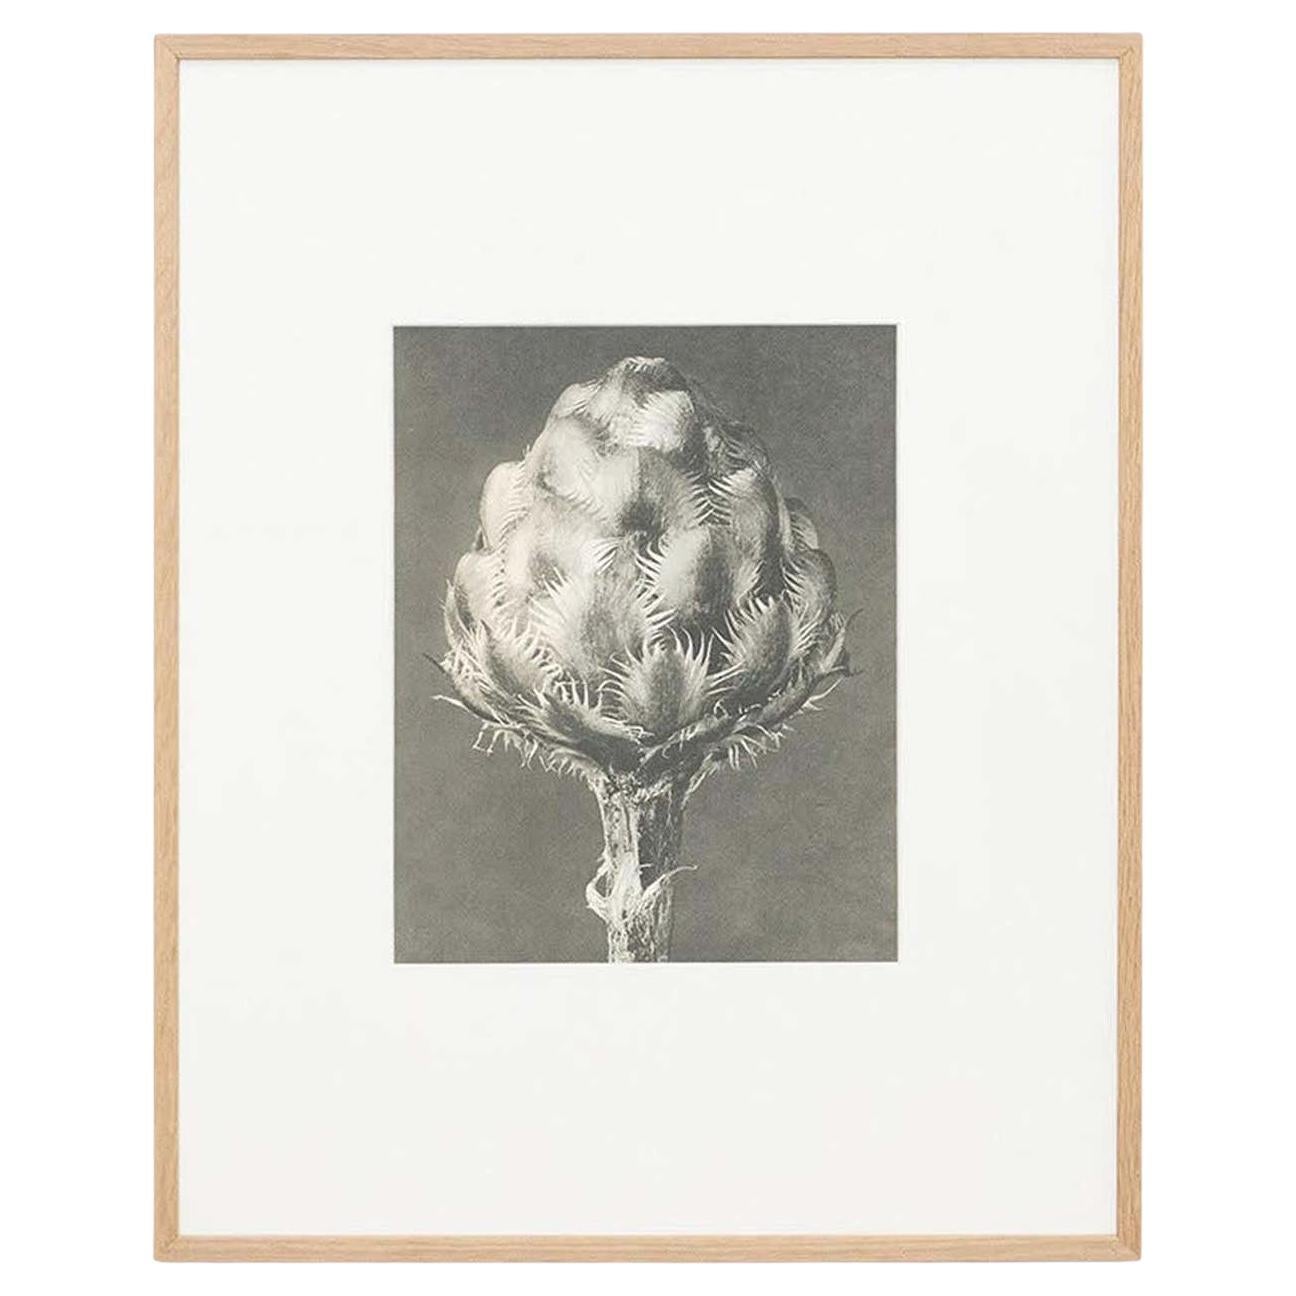 Karl Blossfeldt Schwarz-Weiß-Blumen-Fotogravur, botanische Fotografie, 1942